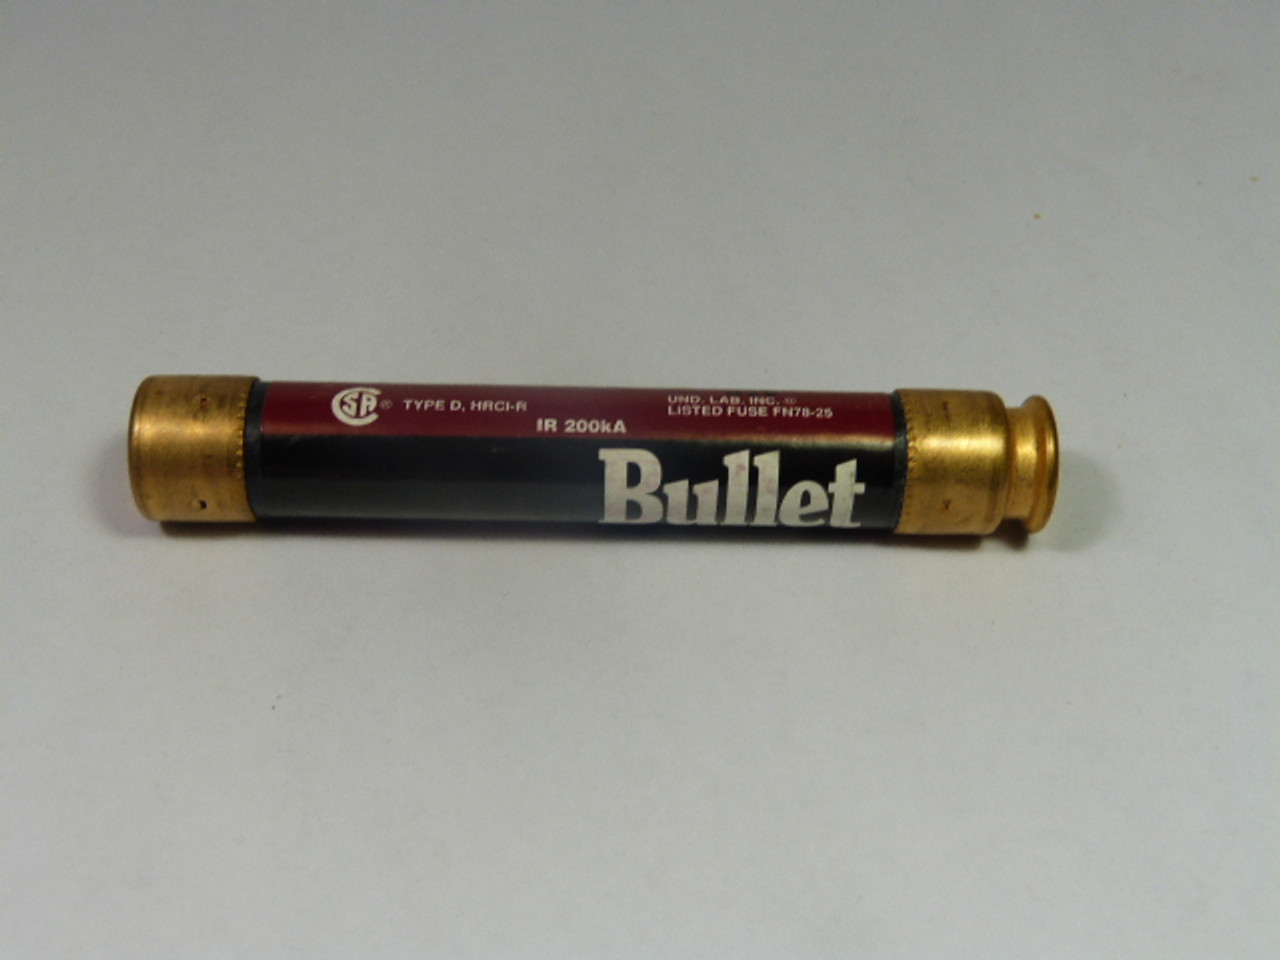 Bullet ECSR6.25 Time Delay Dual Element Fuse 6.25A 600V USED